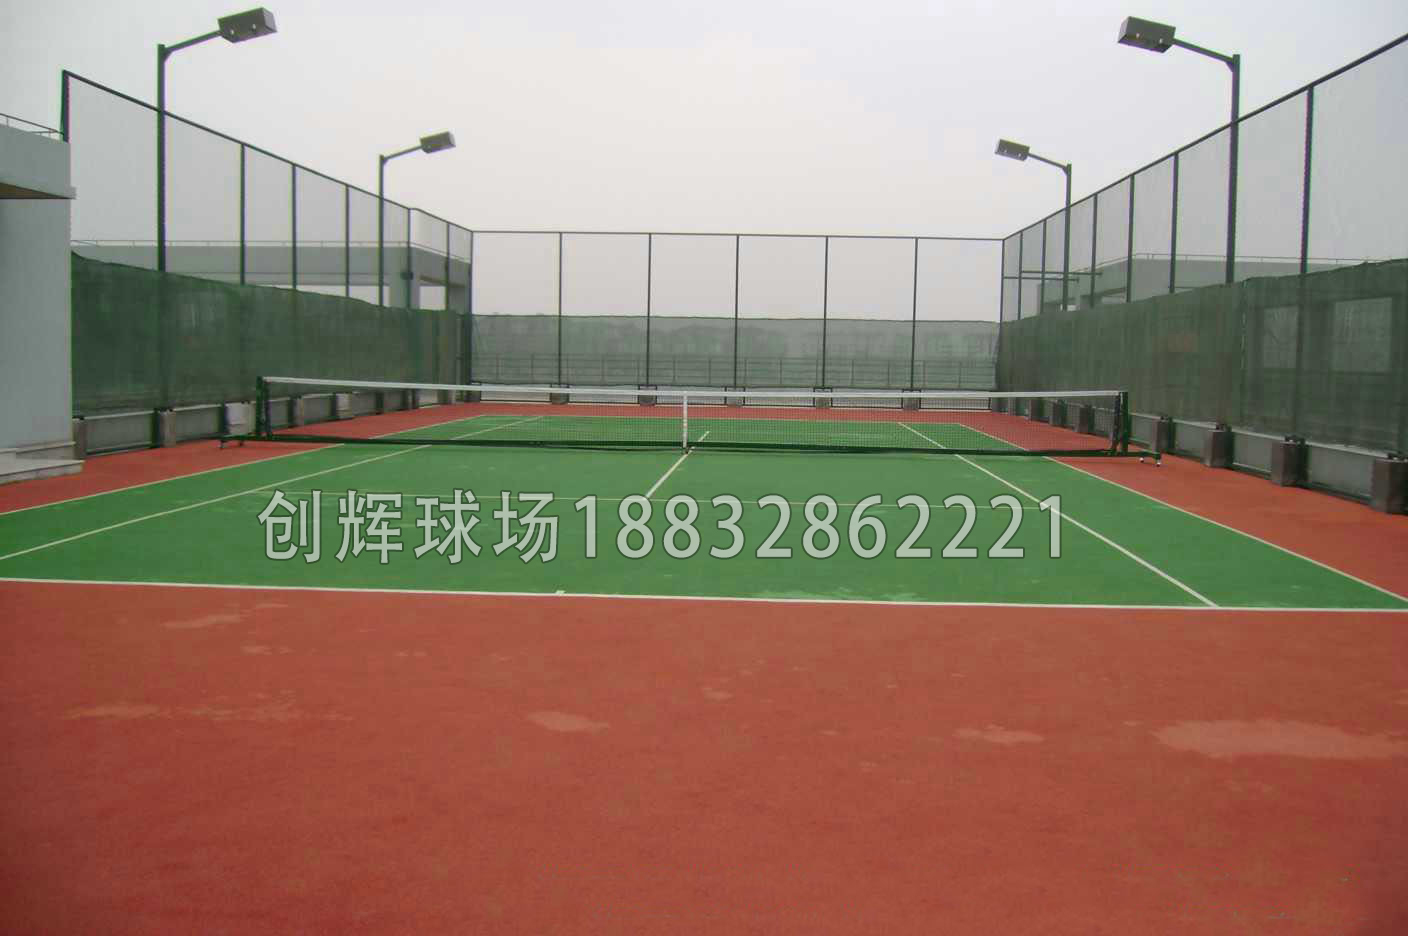 網球場規格